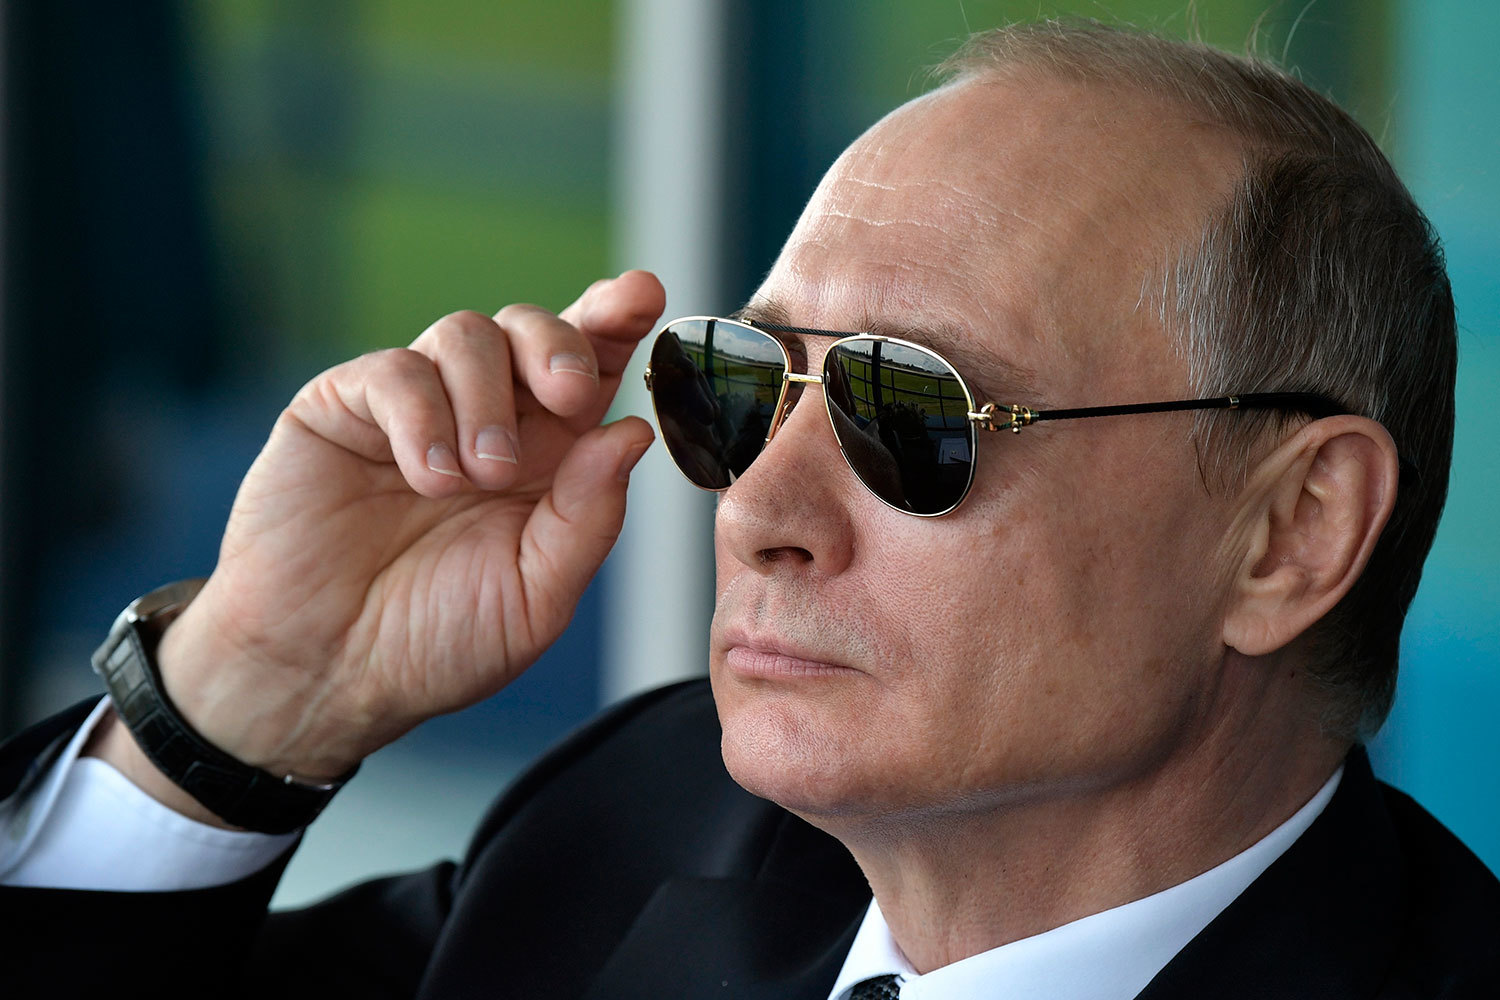 Бодр и весел всем врагам назло: Владимир Путин в пятый раз приступил к обязанностям президента России